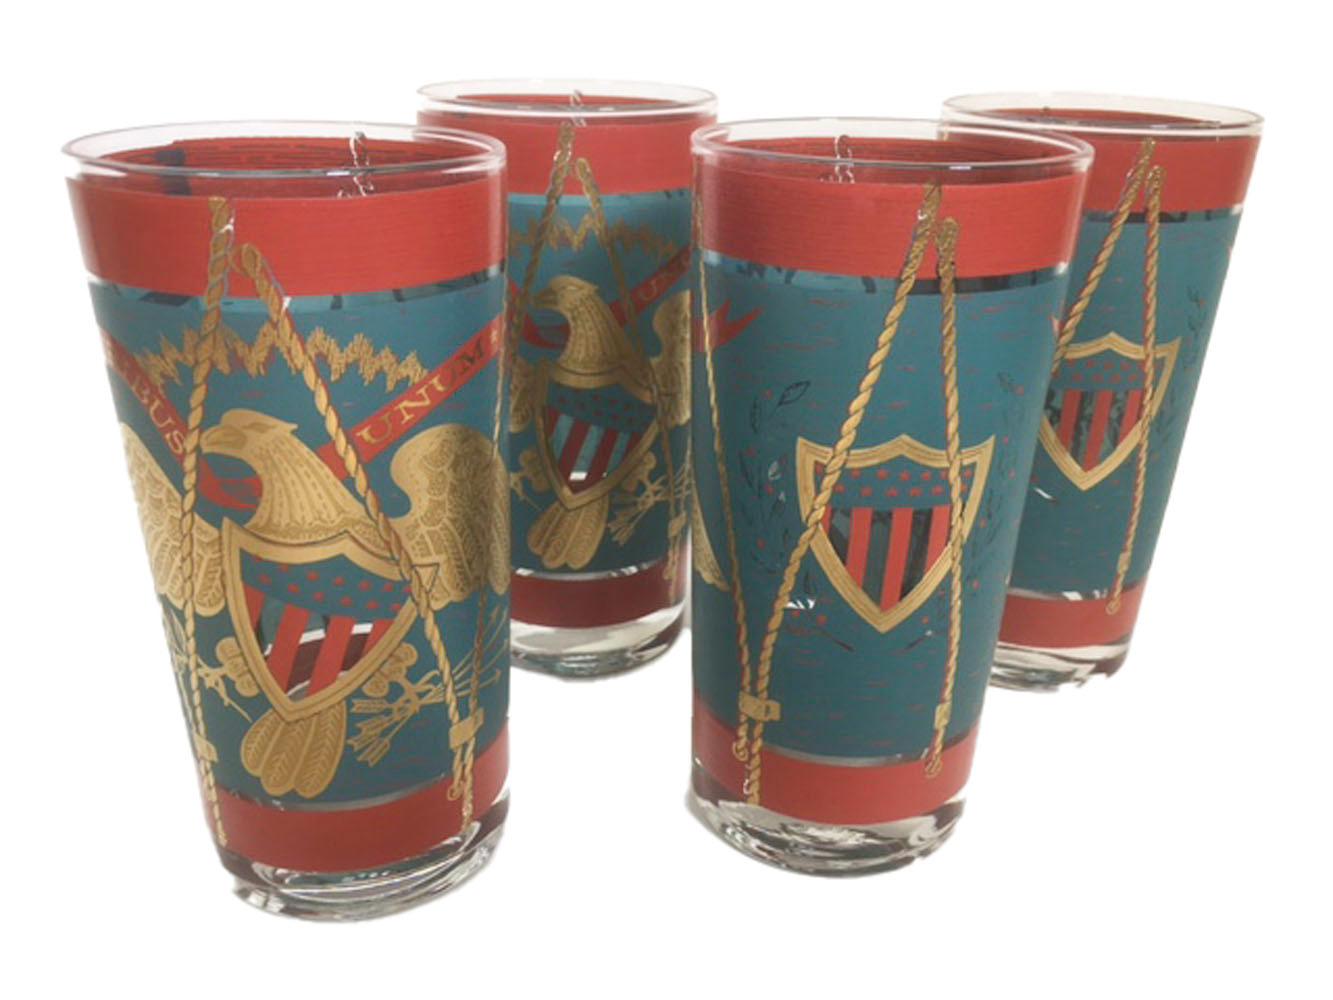 Verres highball modernes du milieu du siècle dernier, décorés comme des tambours de parade en émail sarcelle et rouge avec de l'or 22 carats.
Le recto présente un grand aigle patriotique sous une bannière portant la devise E Pluribus Unum. L'aigle,